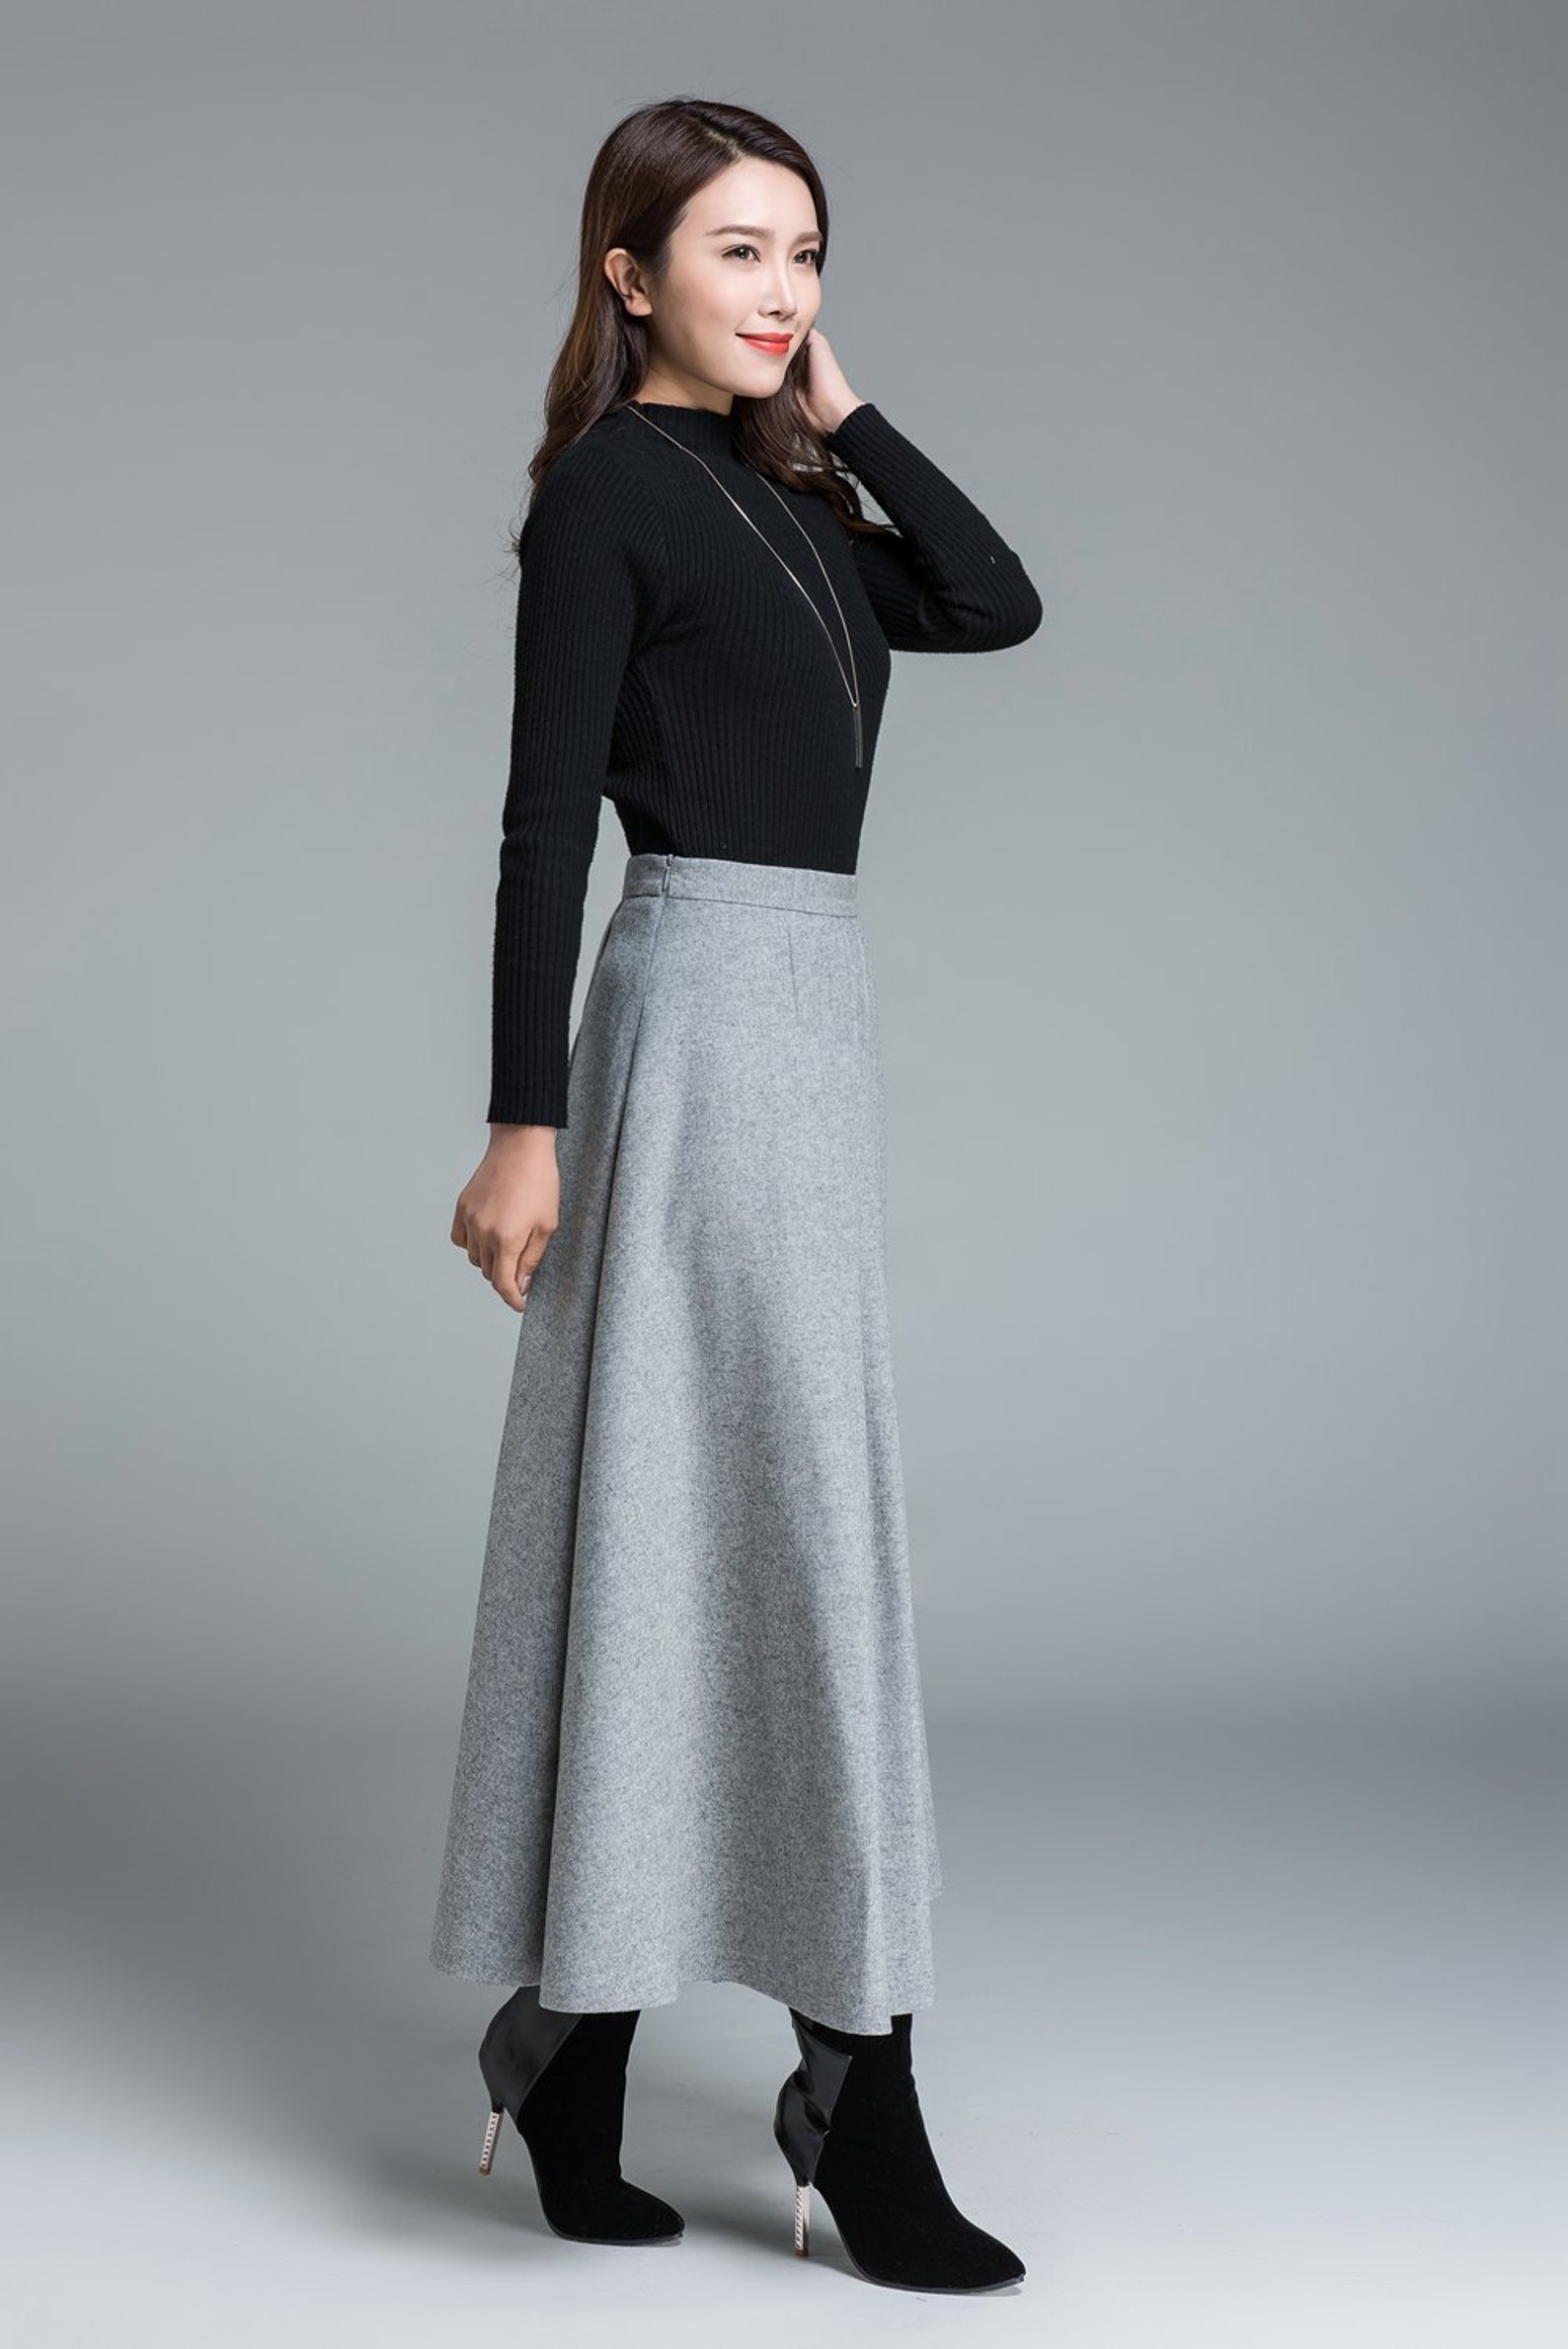 Light grey skirt wool skirt winter skirt pleated skirt | Etsy